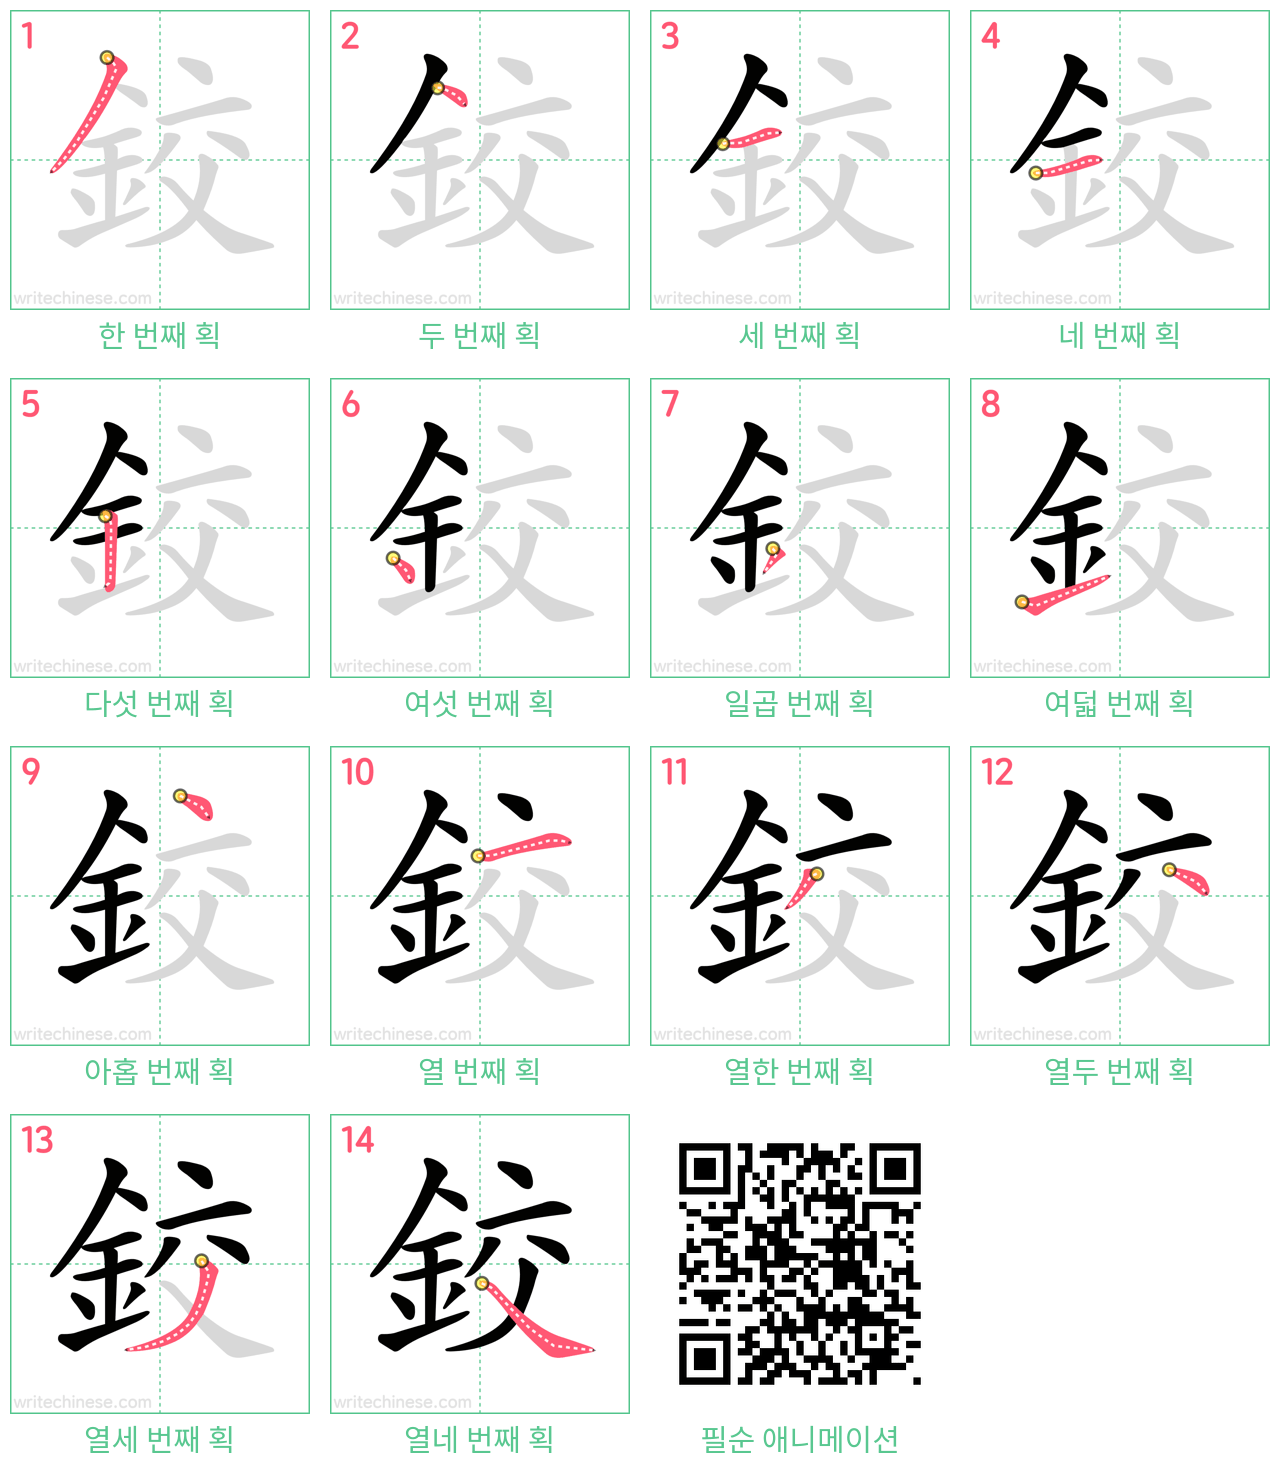 鉸 step-by-step stroke order diagrams